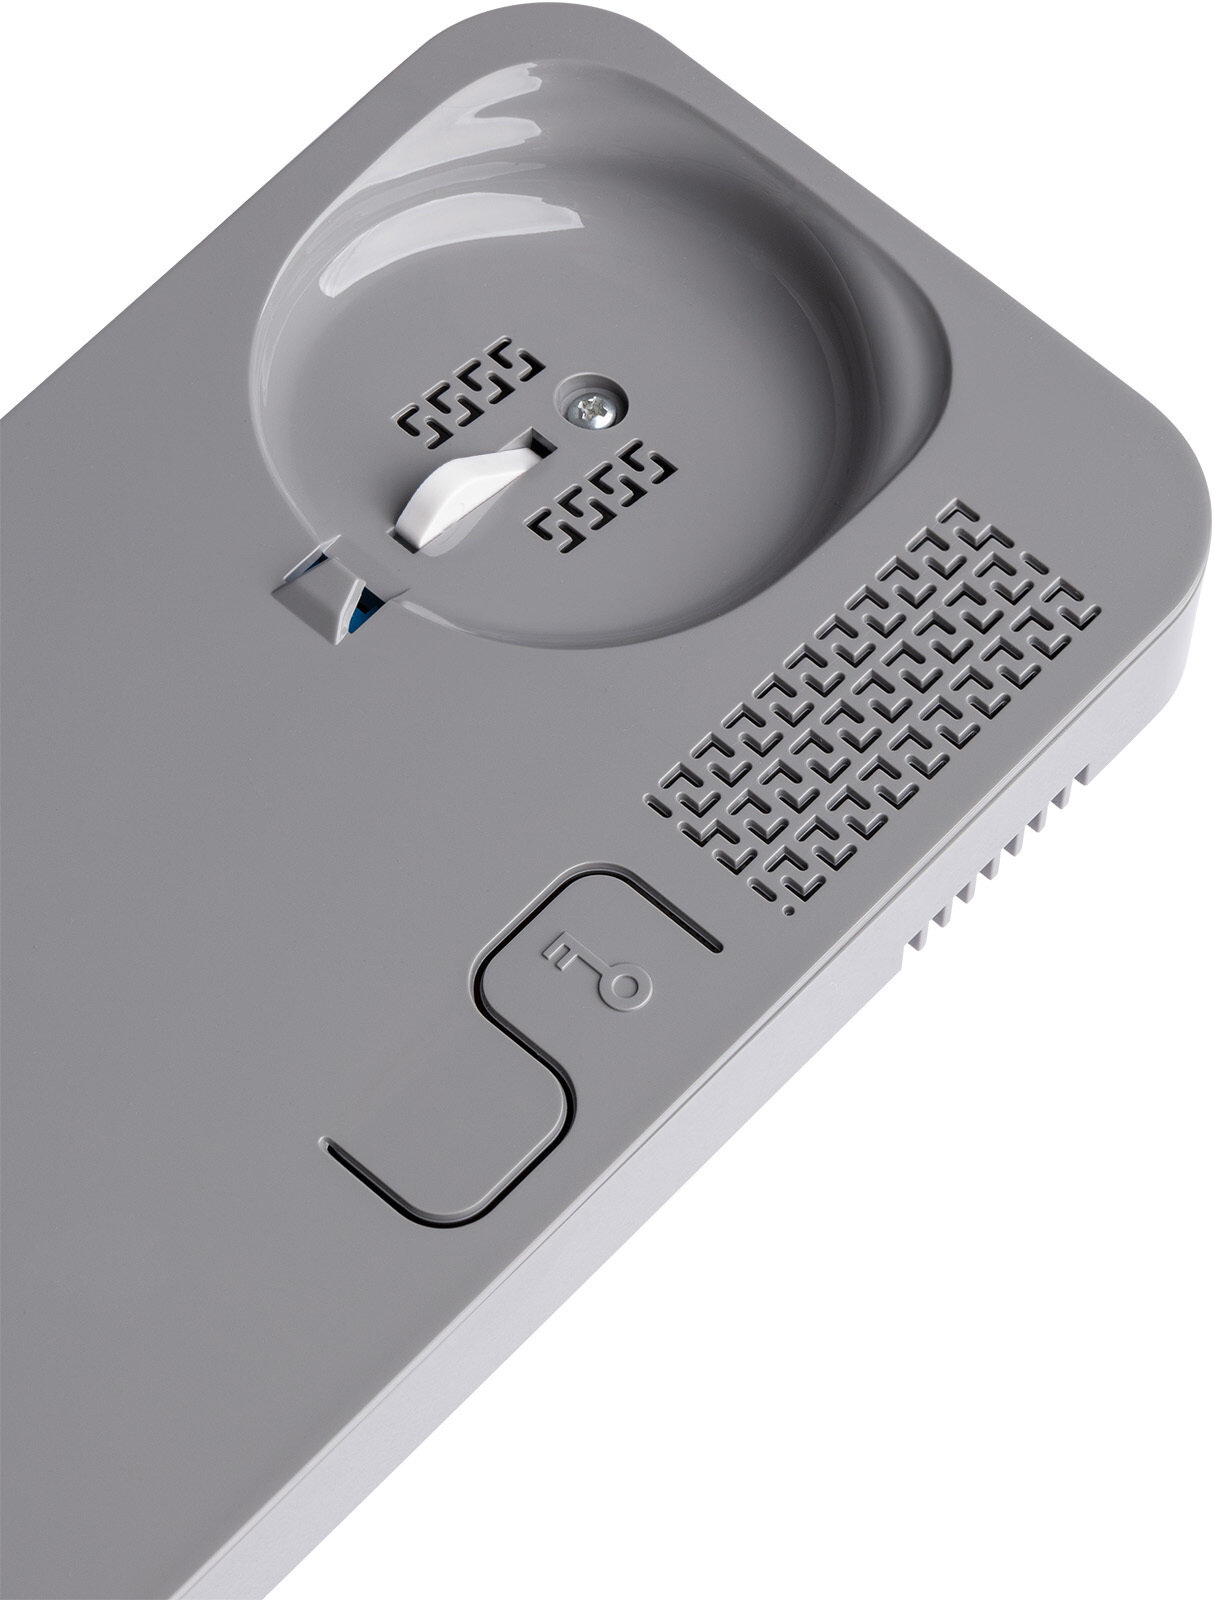 Трубка домофона Unifon Smart U цвет бело-серый